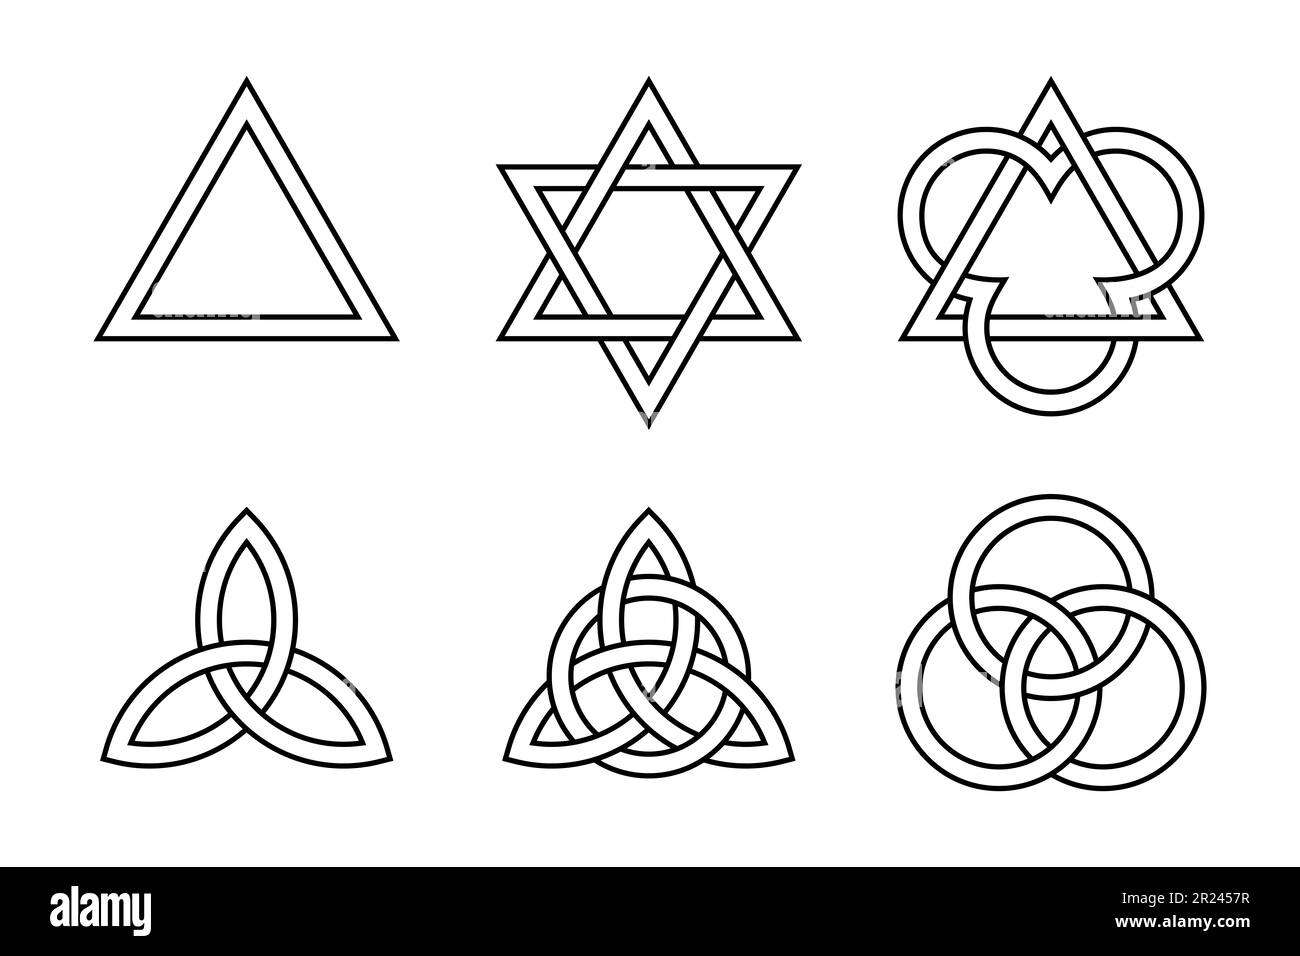 Sechs Dreifaltigkeitssymbole. Antike christliche Symbole, geformt durch Dreiecke, keltische Triquetras und Kreise. Stockfoto